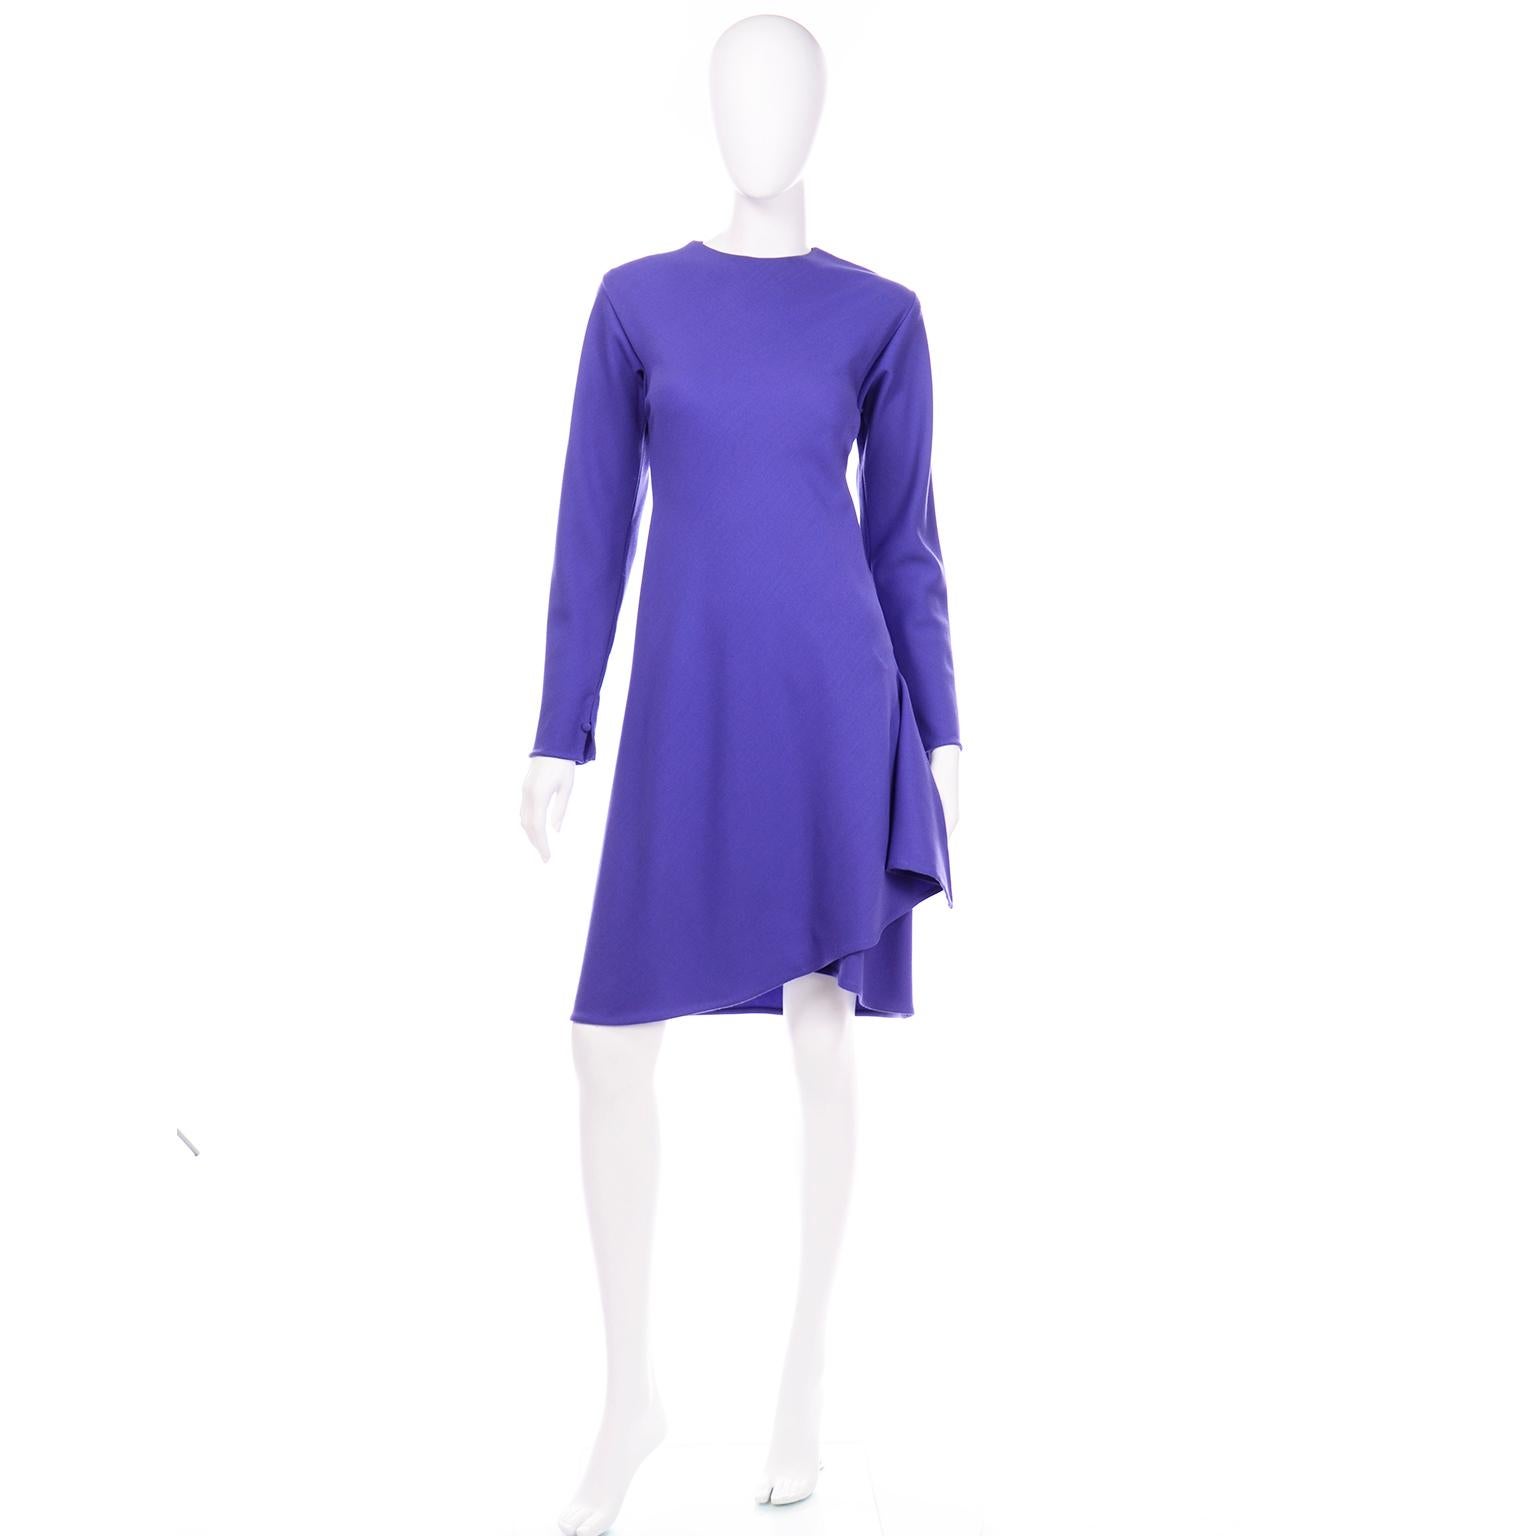 Diese wunderbare Vintage Halston Jersey Kleid ist in einem schönen Farbton von lila leichte Wolle. Auf den ersten Blick sieht das Kleid täuschend einfach aus, aber wenn Sie es anziehen, werden Sie sich sofort der einzigartigen Halston-Elemente